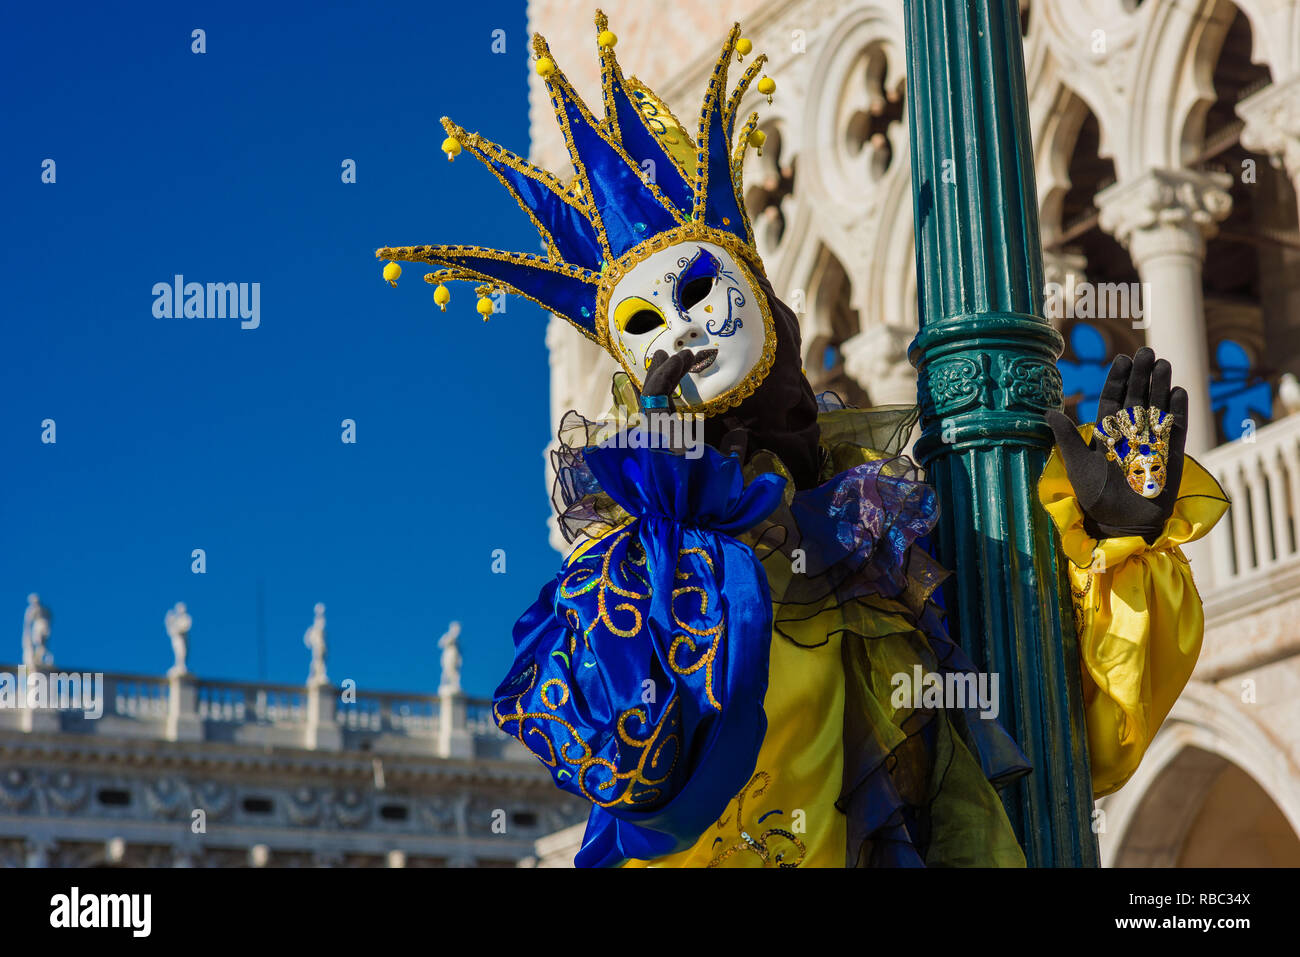 Karneval in Venedig. Eine wunderschöne venezianische Maske mit Jester's Cap vor dem Dogenpalast Stockfoto